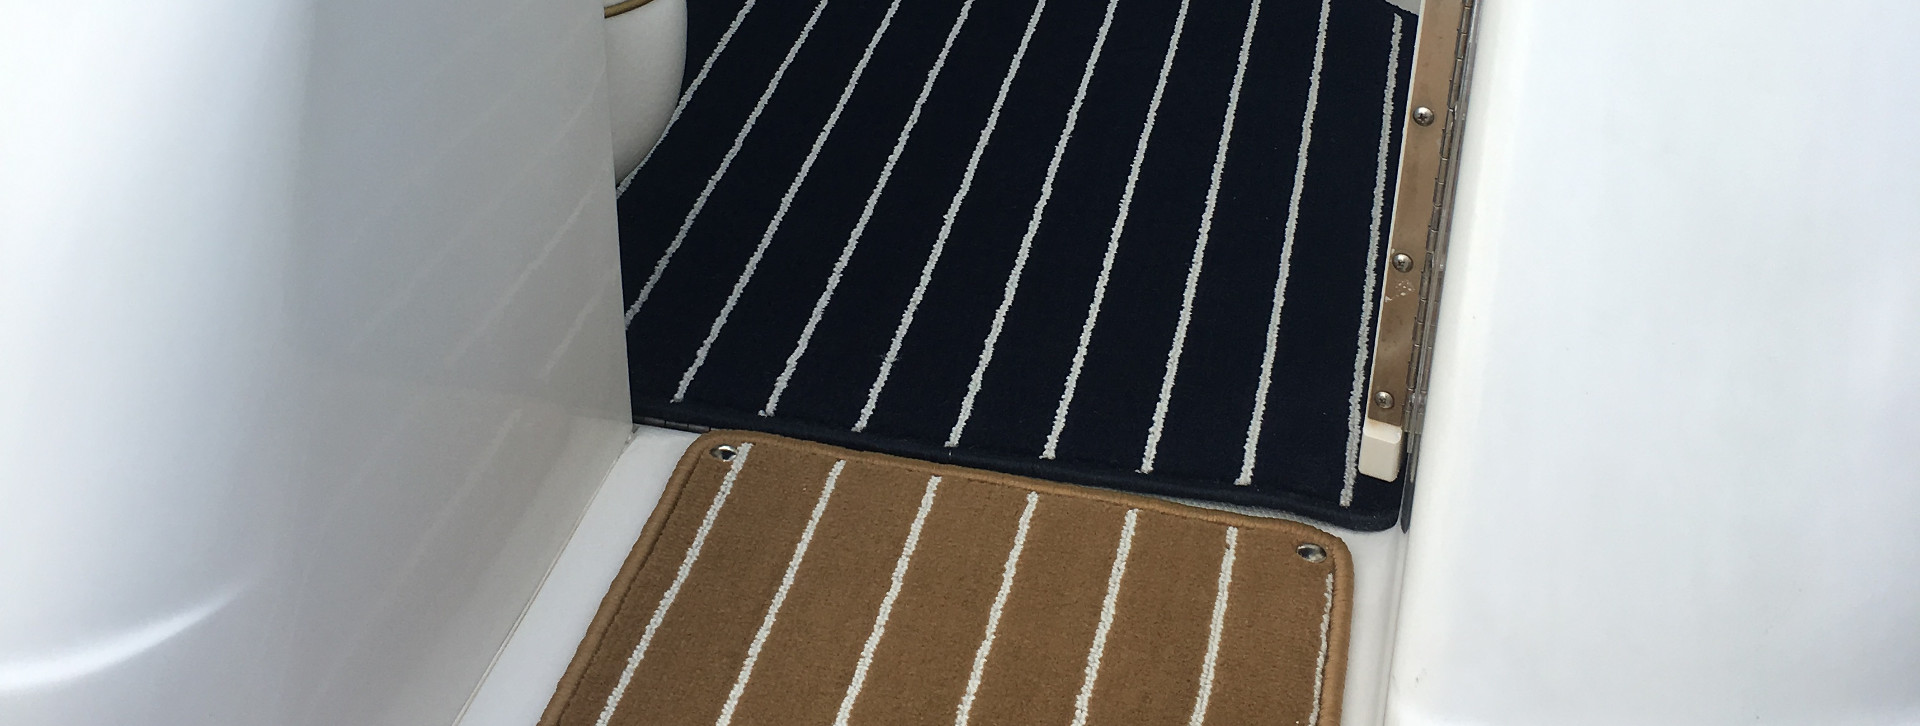 marine tuft carpet